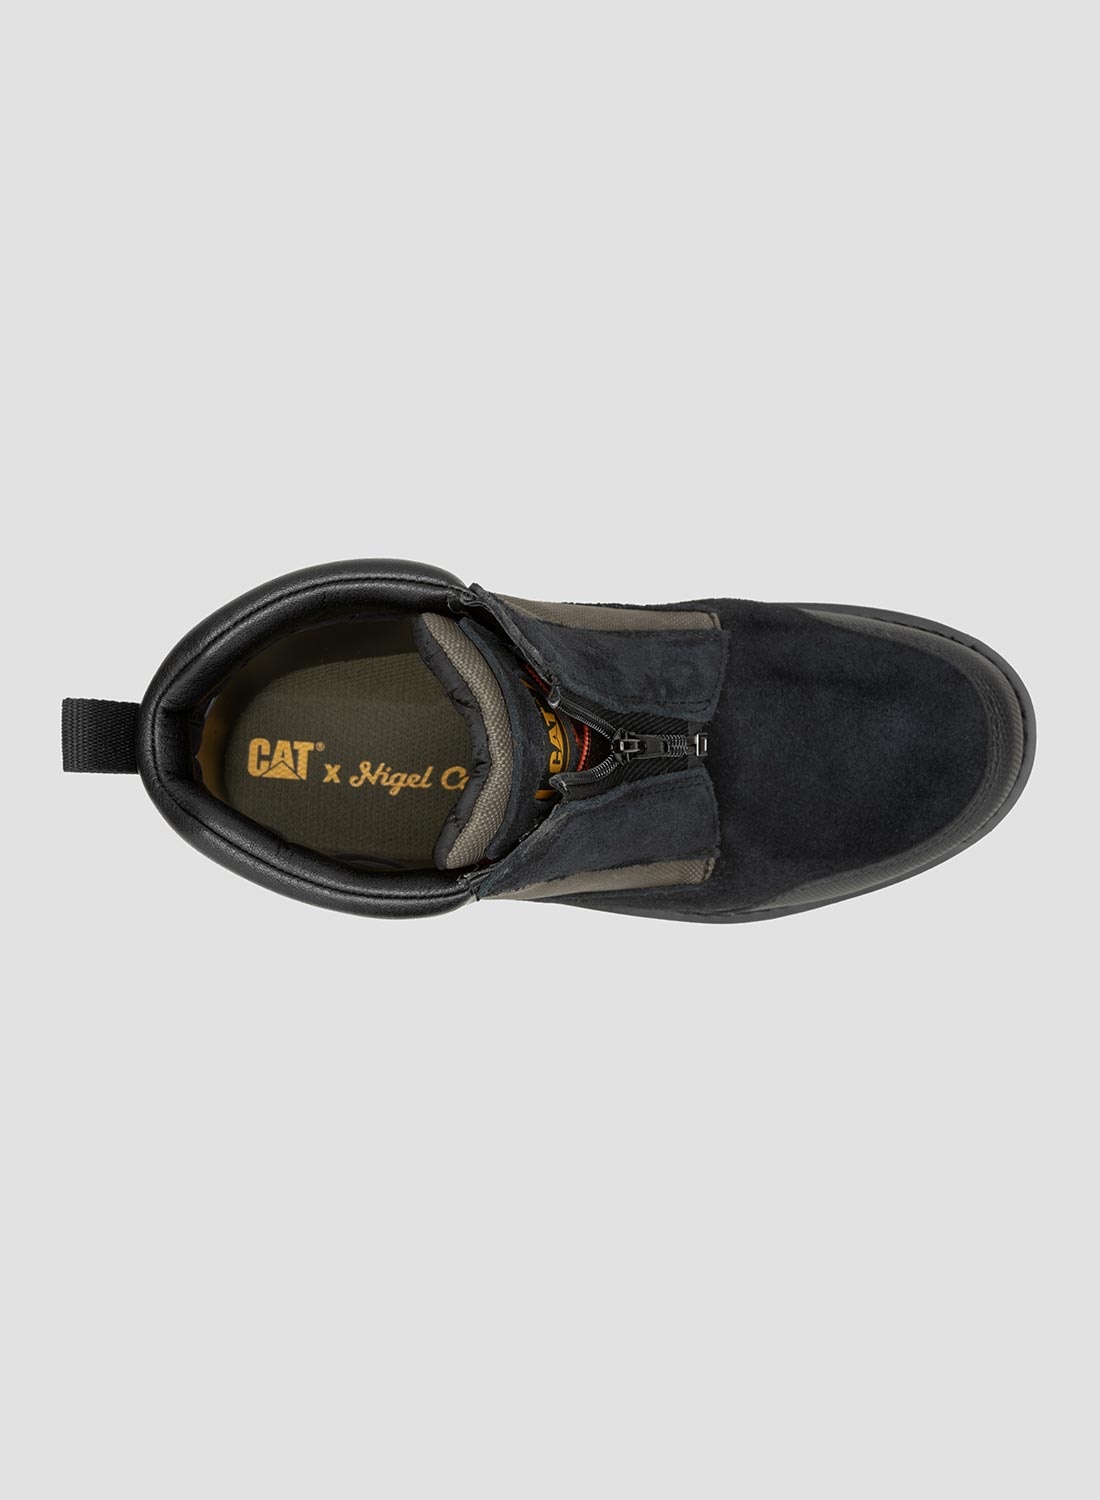 CAT Footwear x Nigel Cabourn Utah Zip in Black Olive - 8